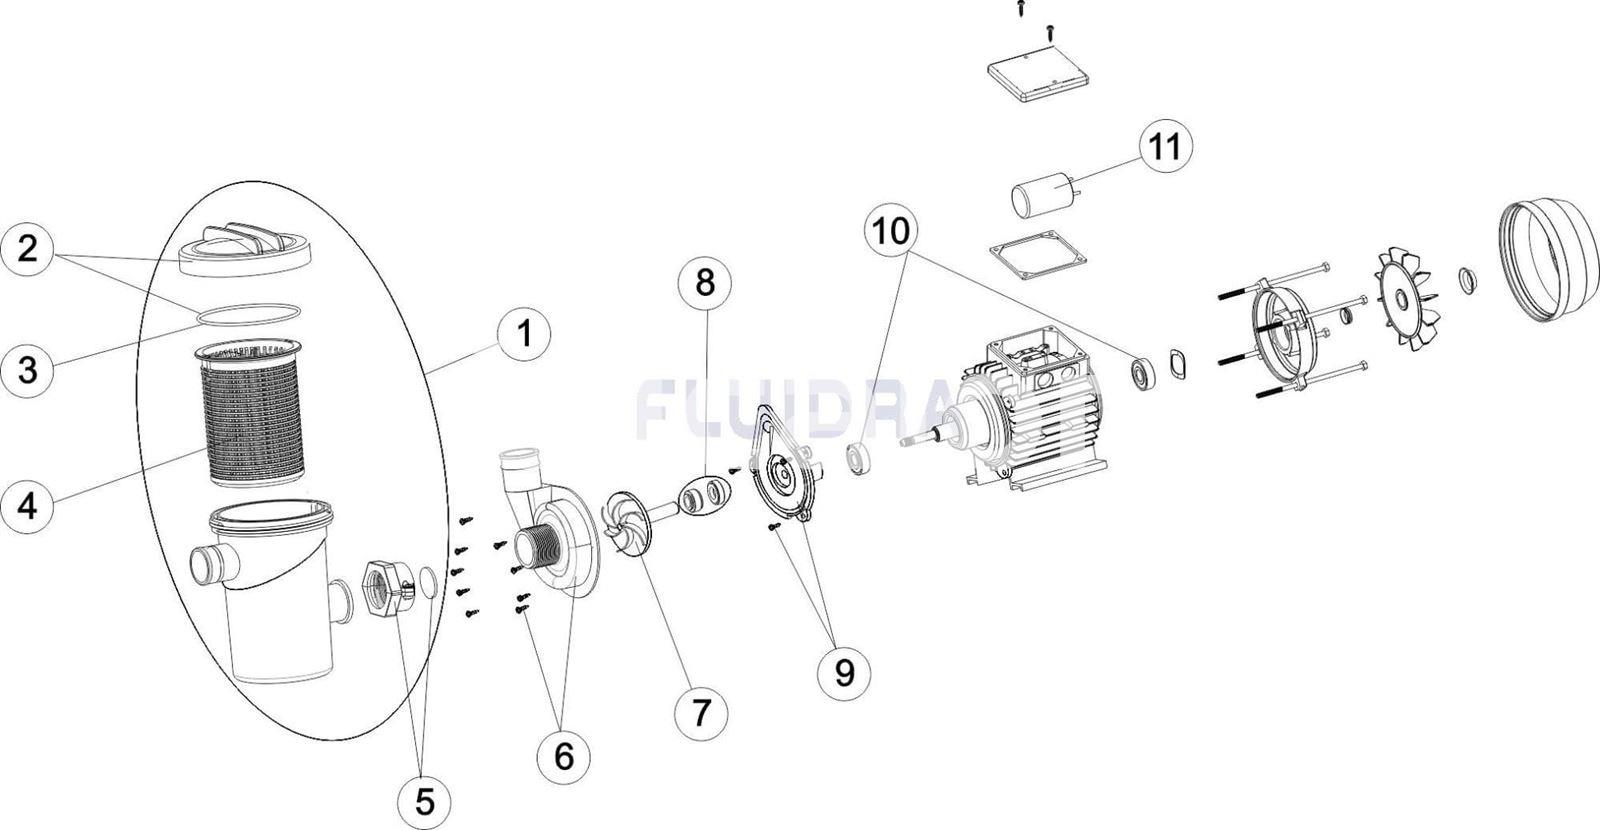 Condensador bonbas fiji6 - Imagen 2